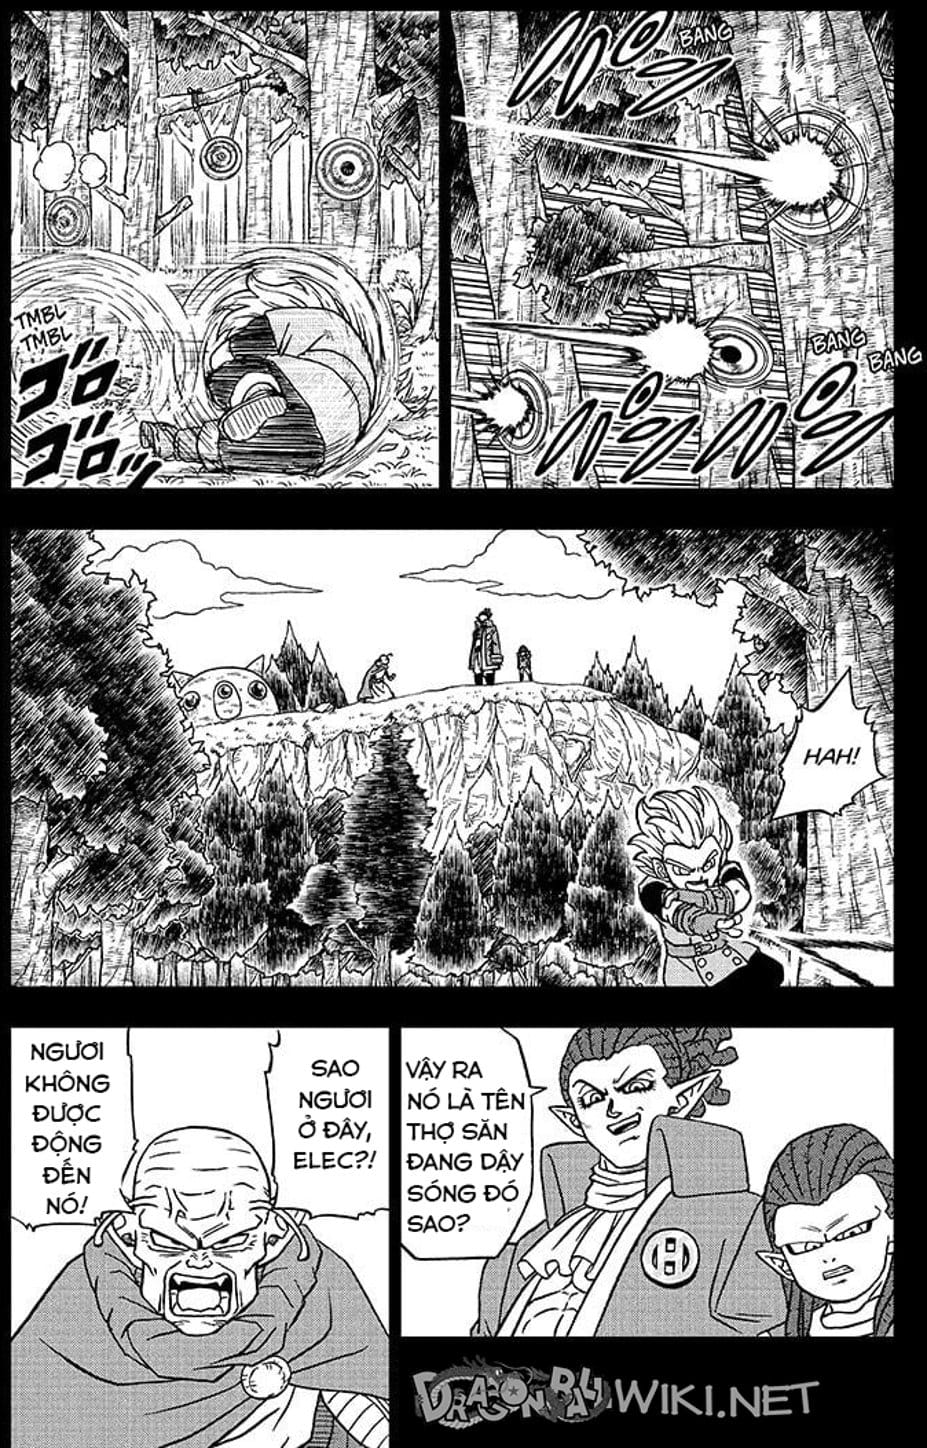 Truyện Tranh Truy Tìm Ngọc Rồng Siêu Cấp - Dragon Ball Super trang 3140